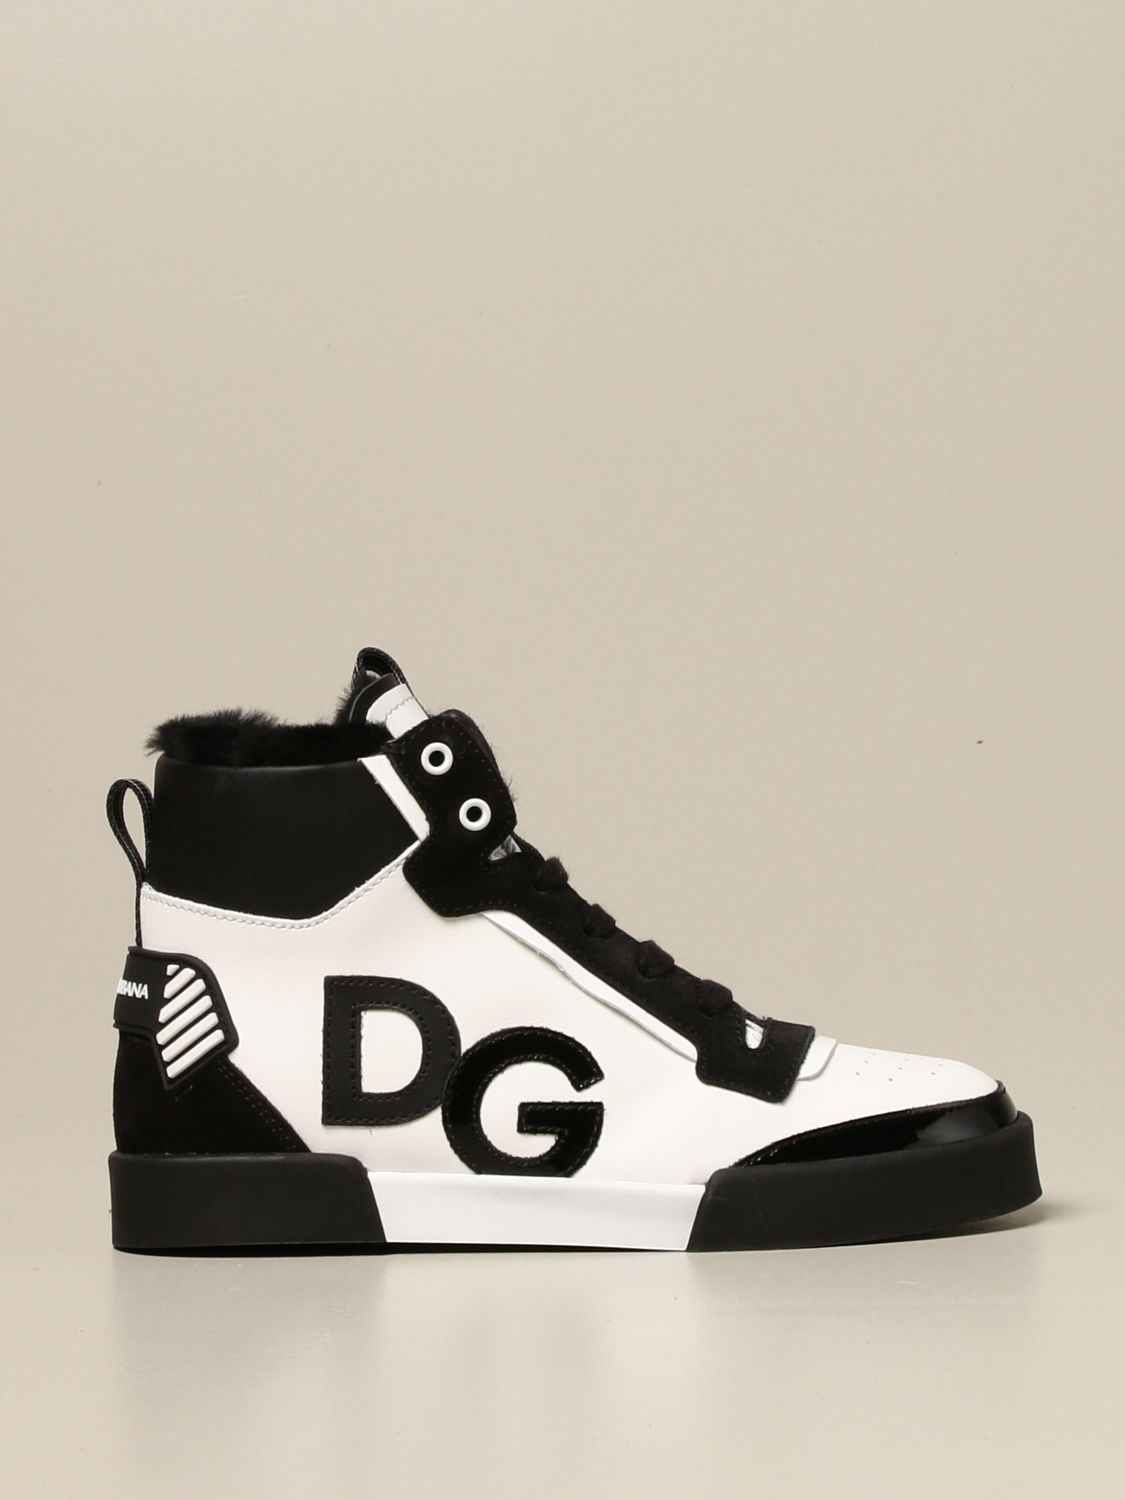 dg brand shoes